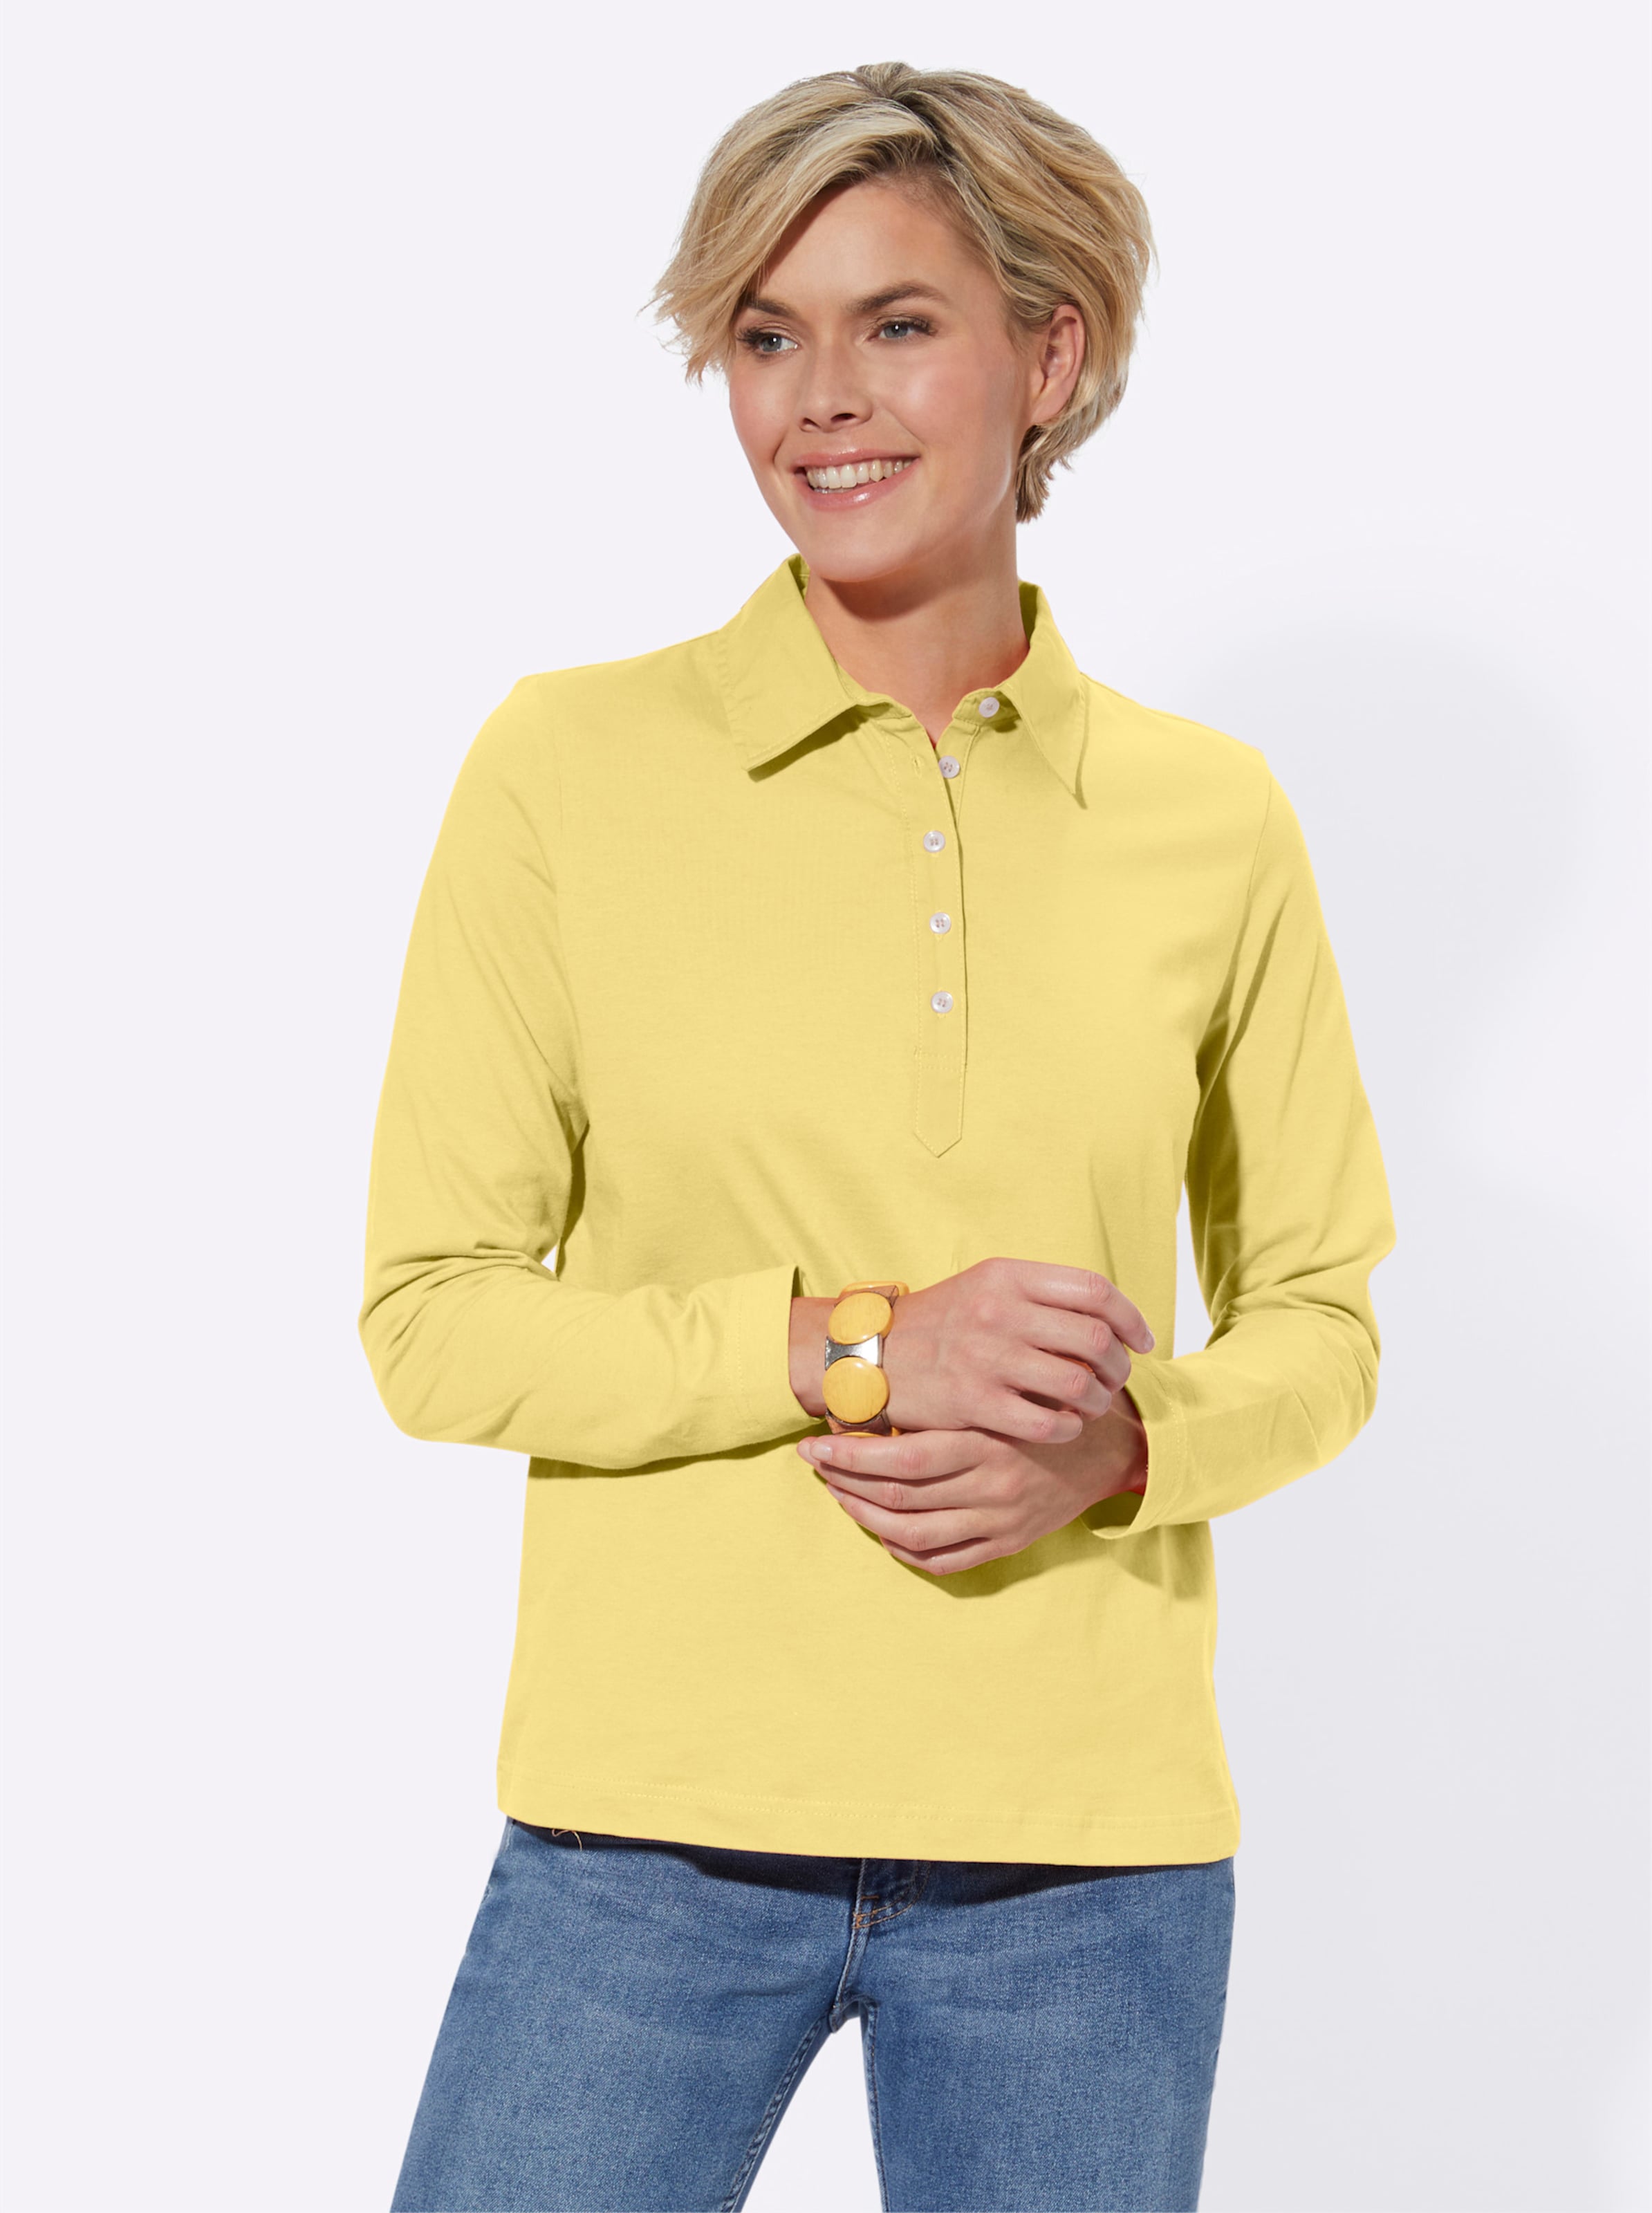 Jersey günstig Kaufen-Langarm-Poloshirt in gelb von heine. Langarm-Poloshirt in gelb von heine <![CDATA[Poloshirt in Single-Jersey-Qualität. Mit Polokragen und Knopfleiste. Langarm.]]>. 